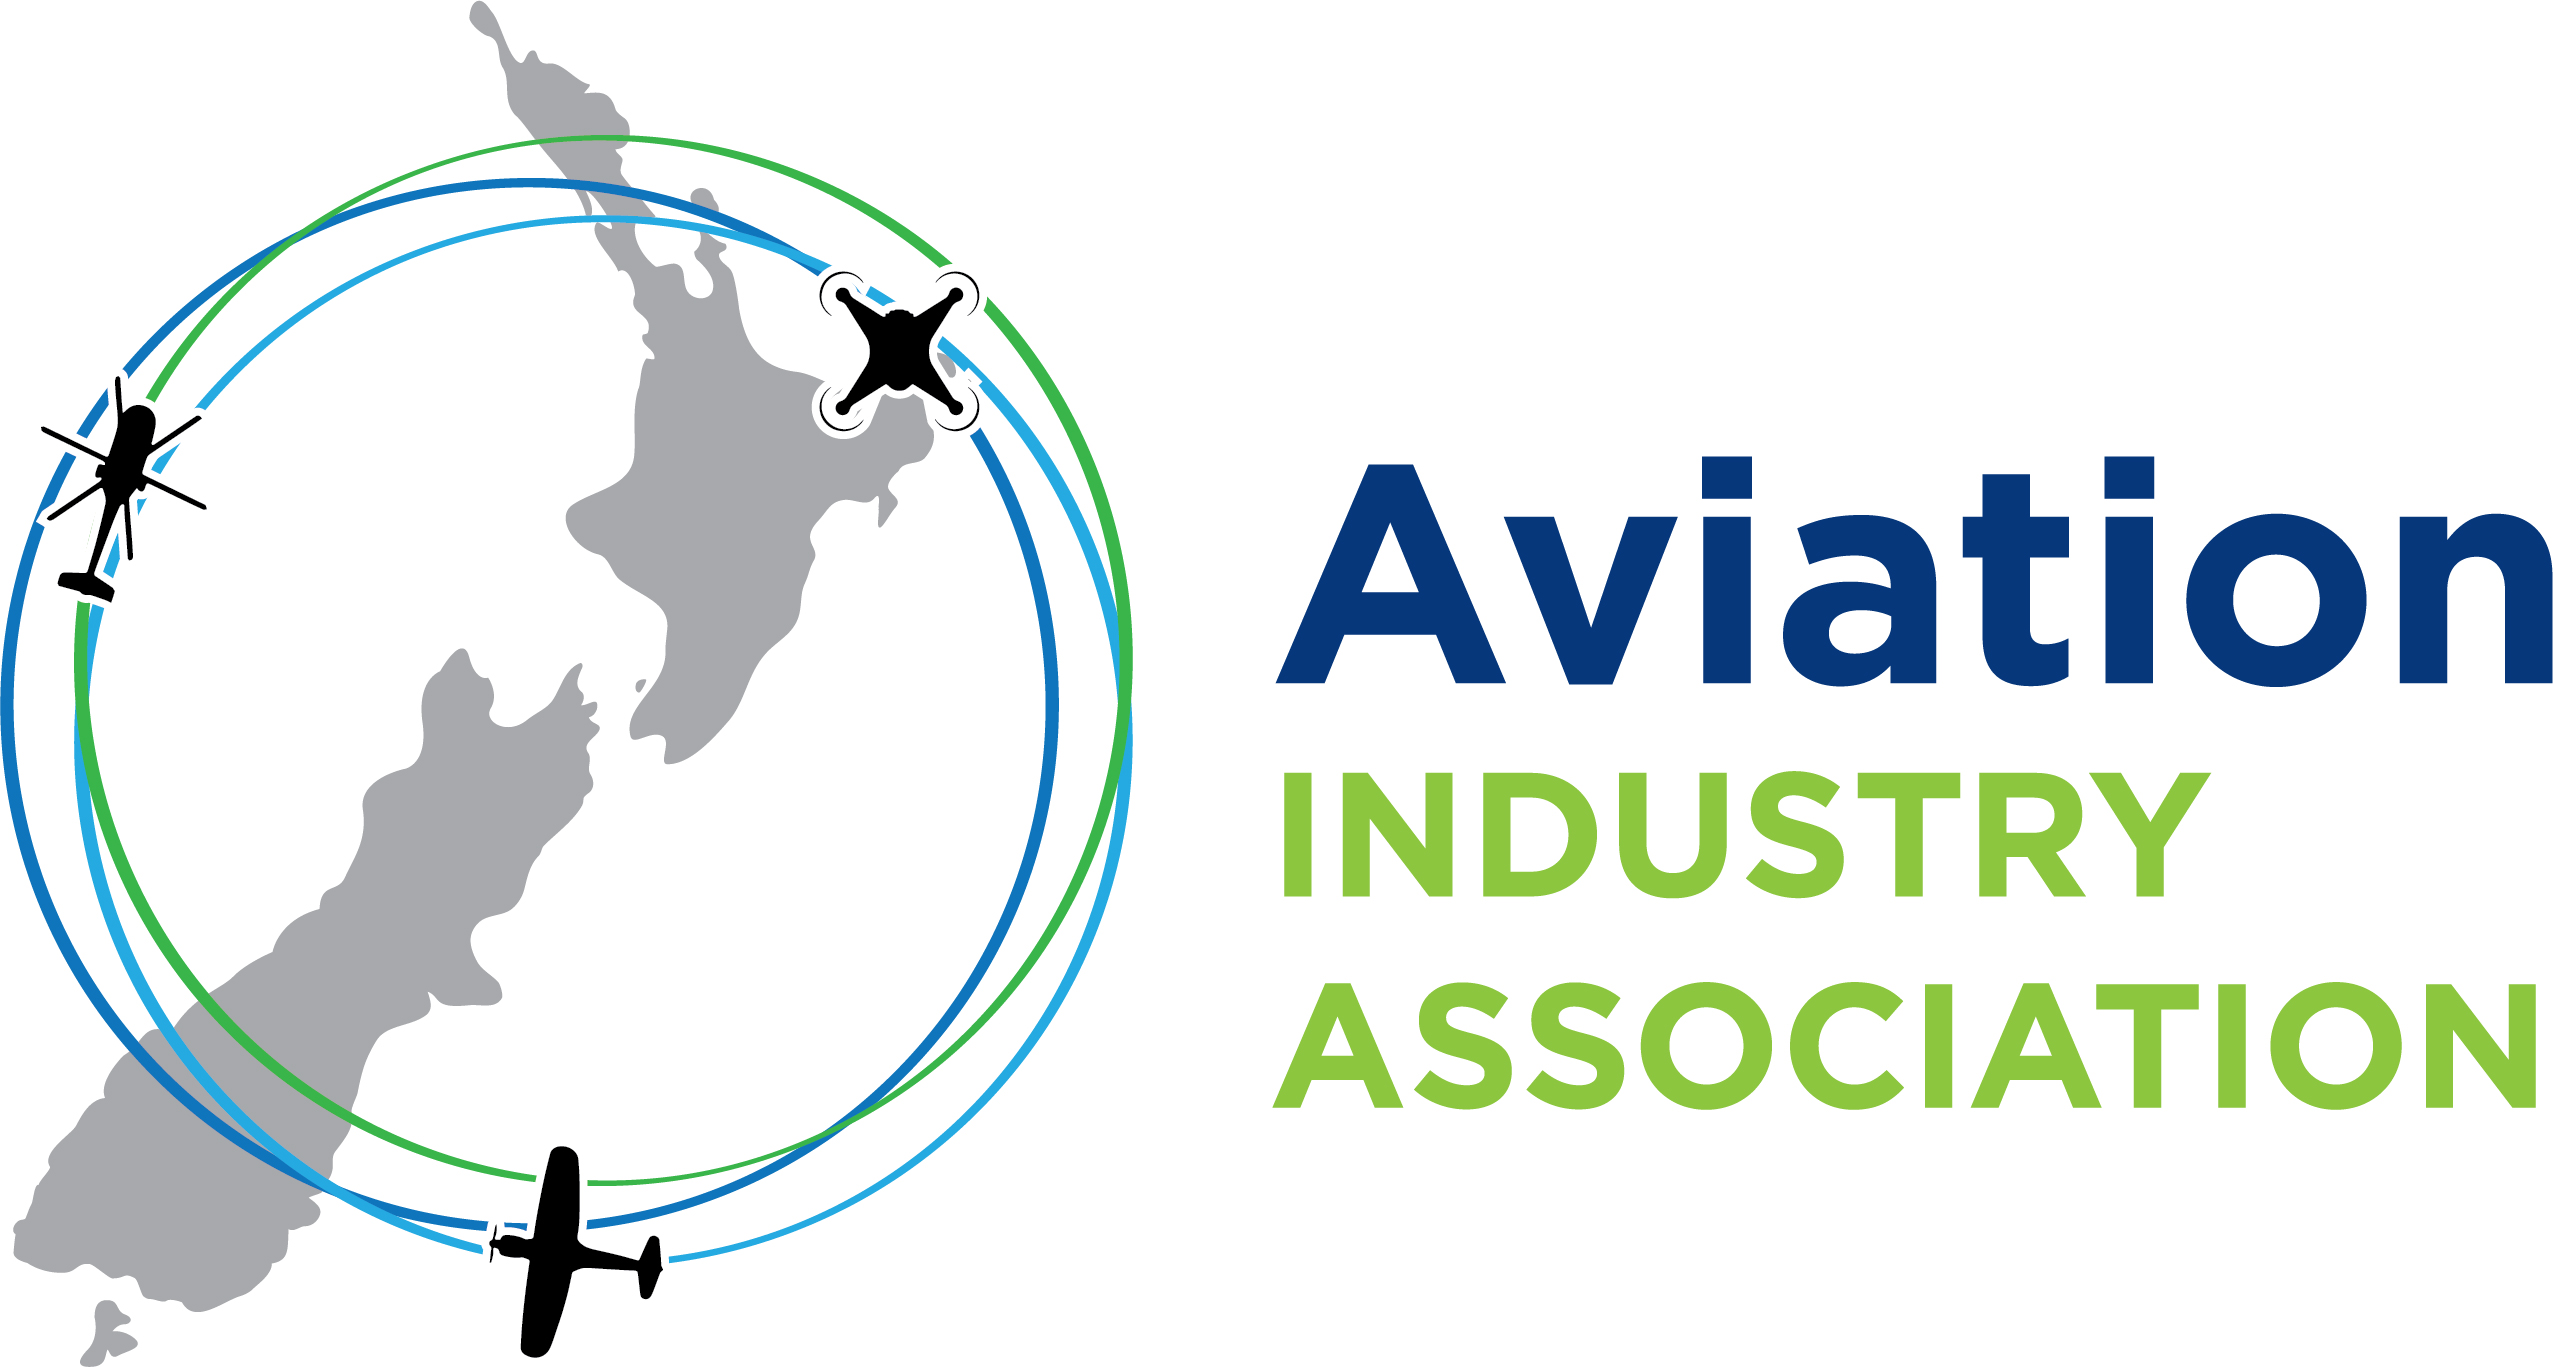 Aviation Industry Association Logo